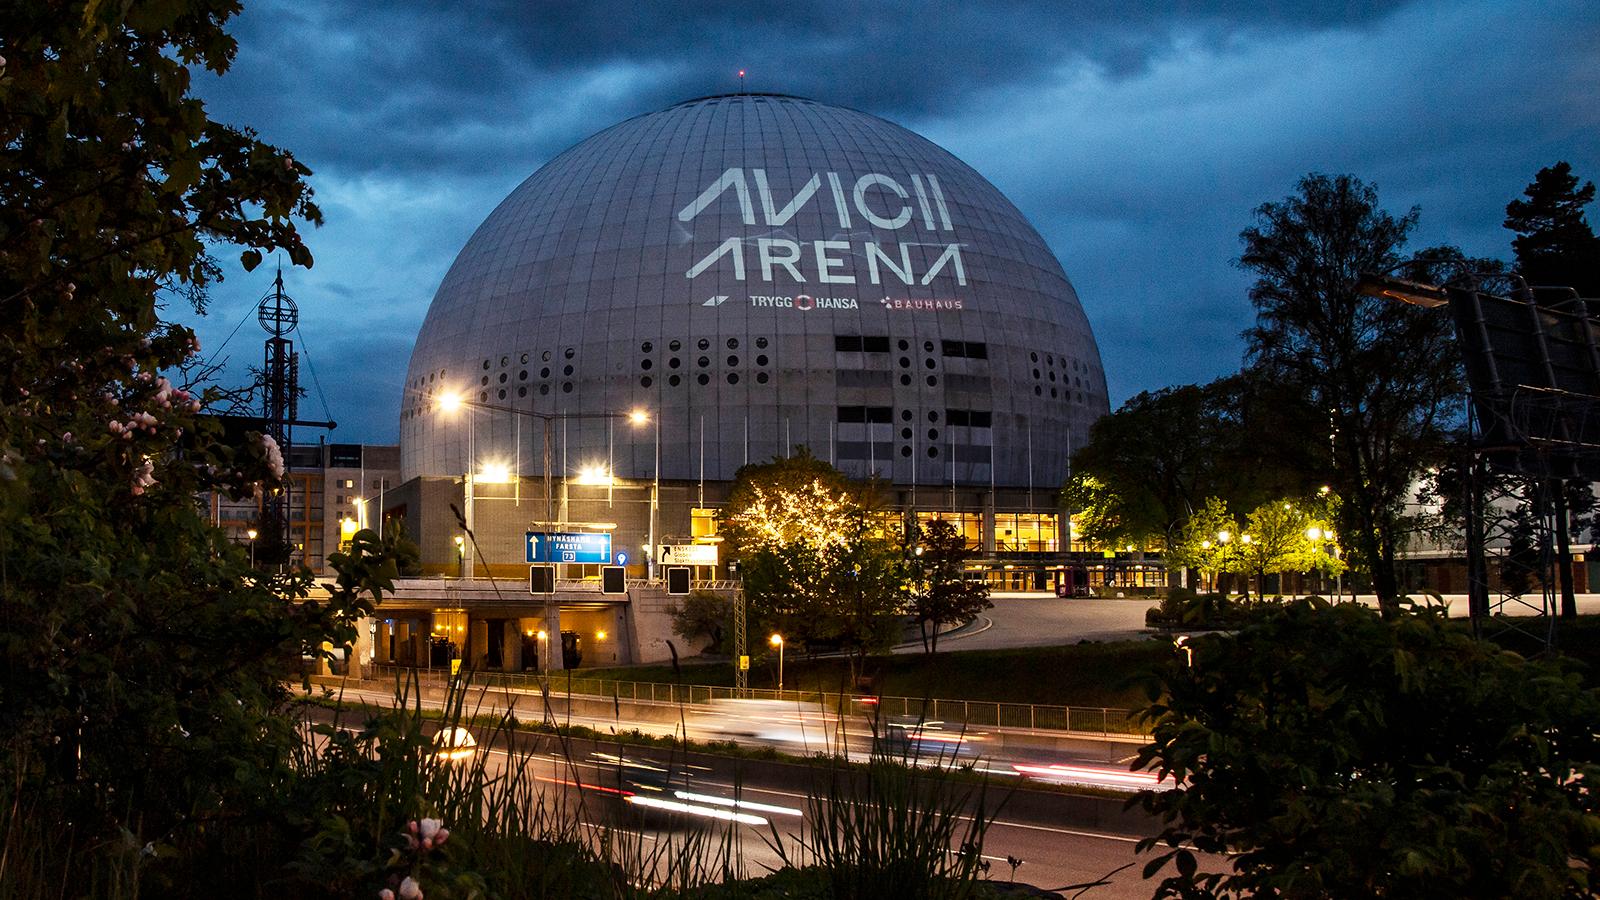 Första deltävlingen sänds från Avicii arena i Stockholm den 5 februari. 